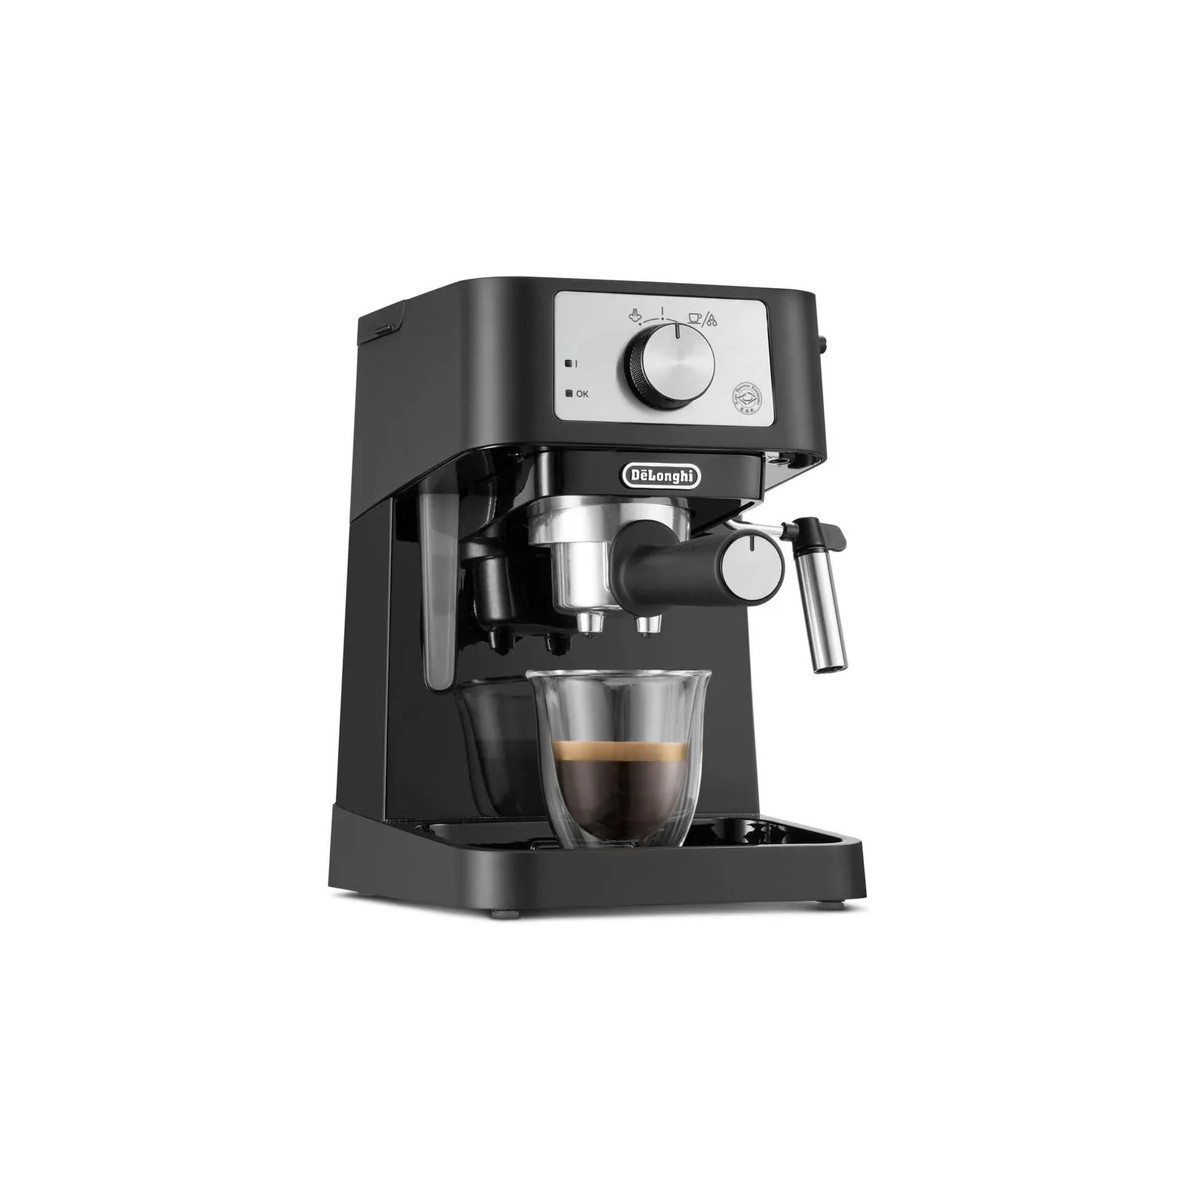 Delonghi Machine à café à percolateur - Noire